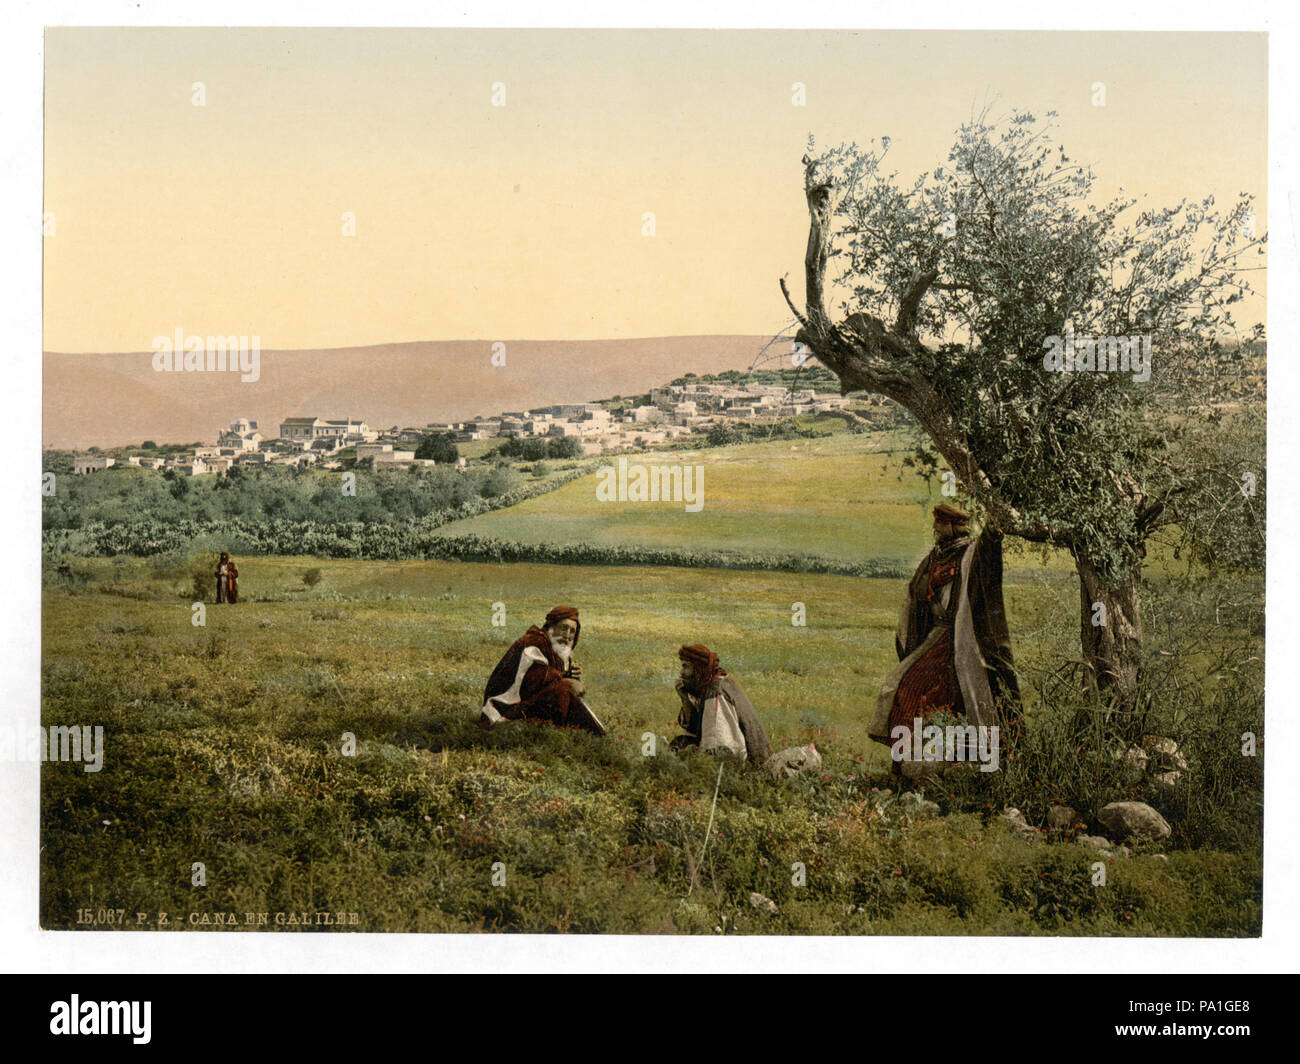 700 Vue générale, de Cana en Galilée, terre sainte-RCAC2002724974 Banque D'Images